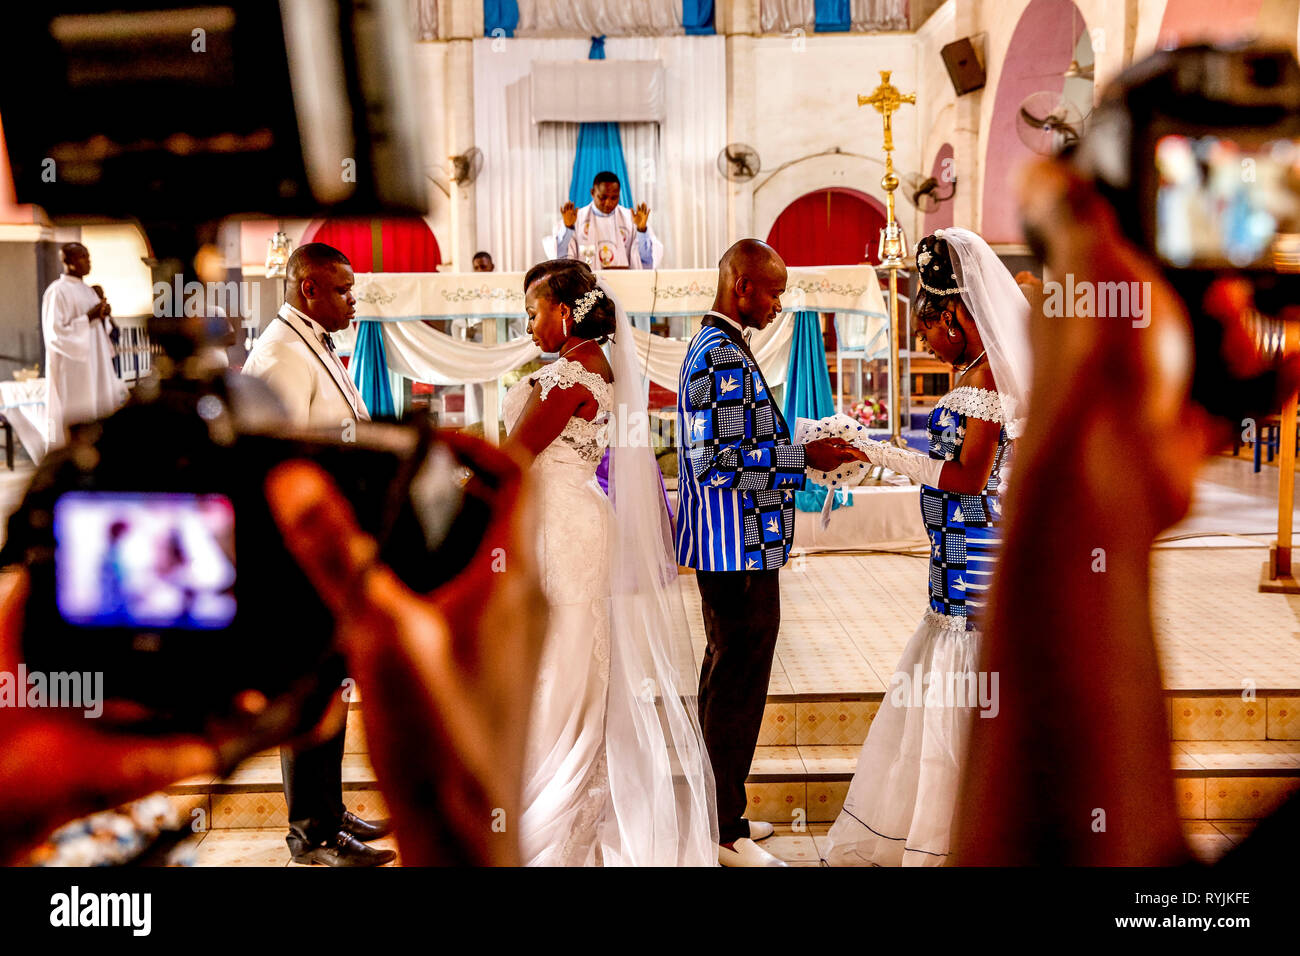 Weddings in Ouagadougou's catholic cathedral, Burkina Faso. Stock Photo